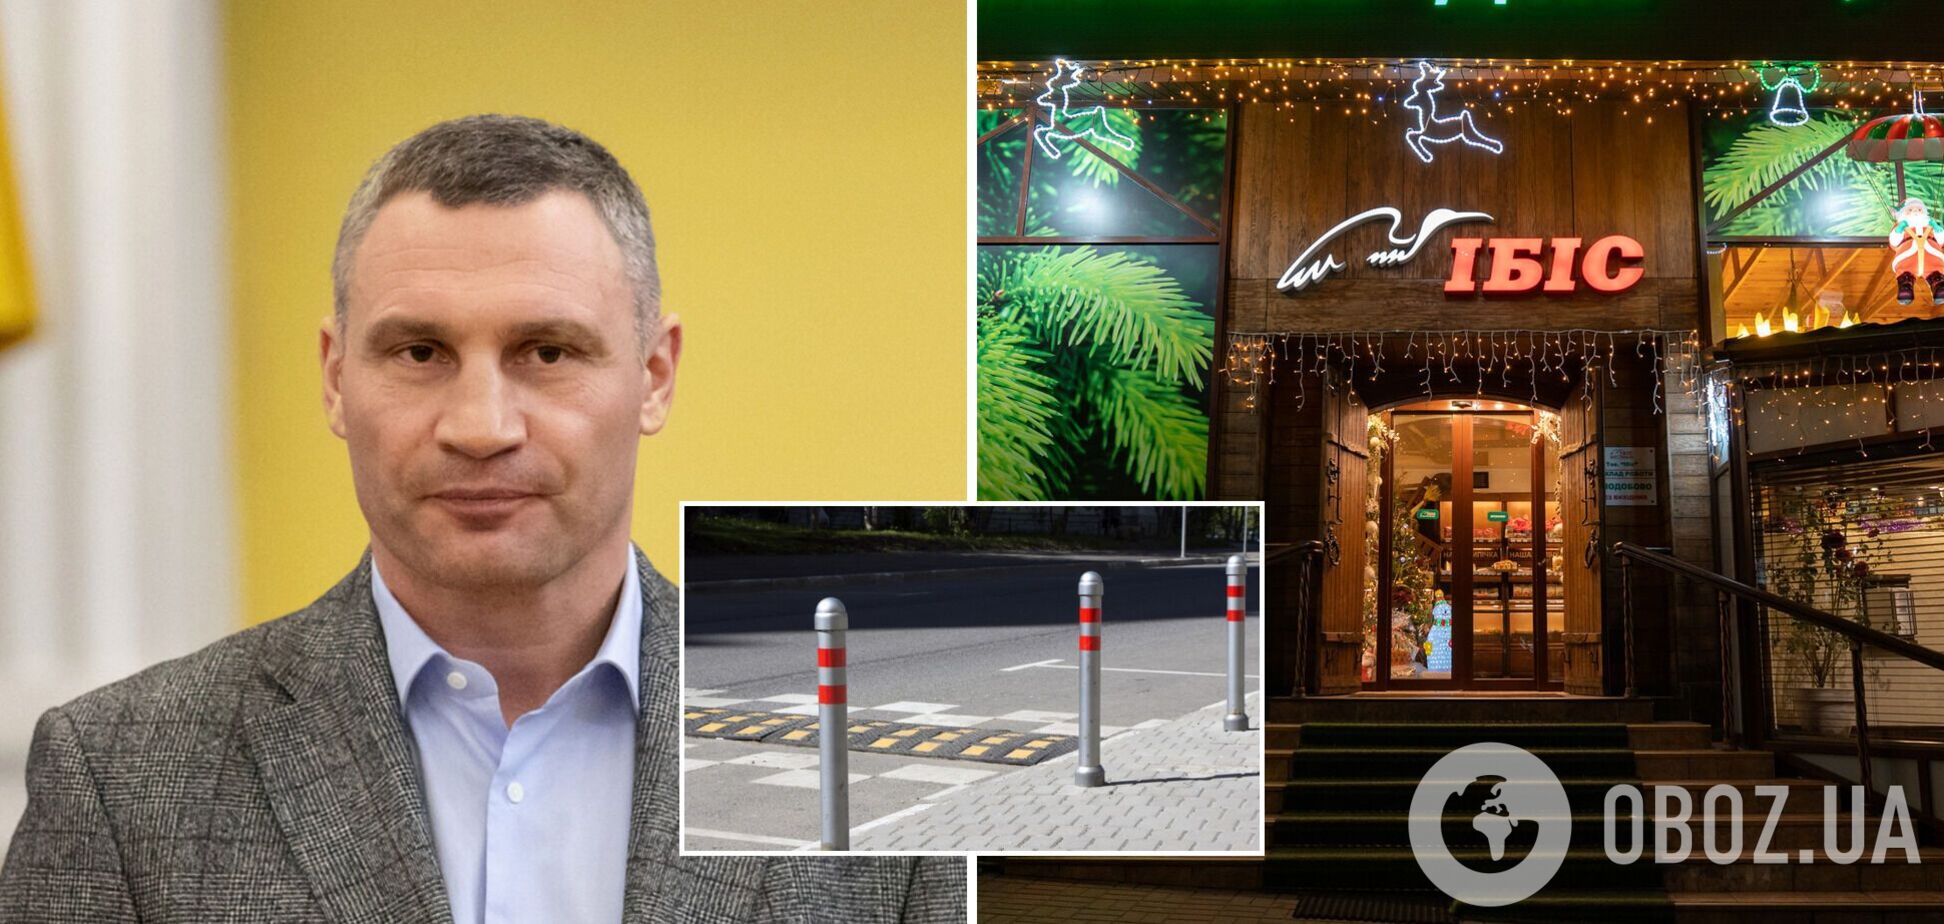 Кличко обратился в полицию безотлагательно расследовать нападение владельца сети магазинов 'ИБИС' на инспектора